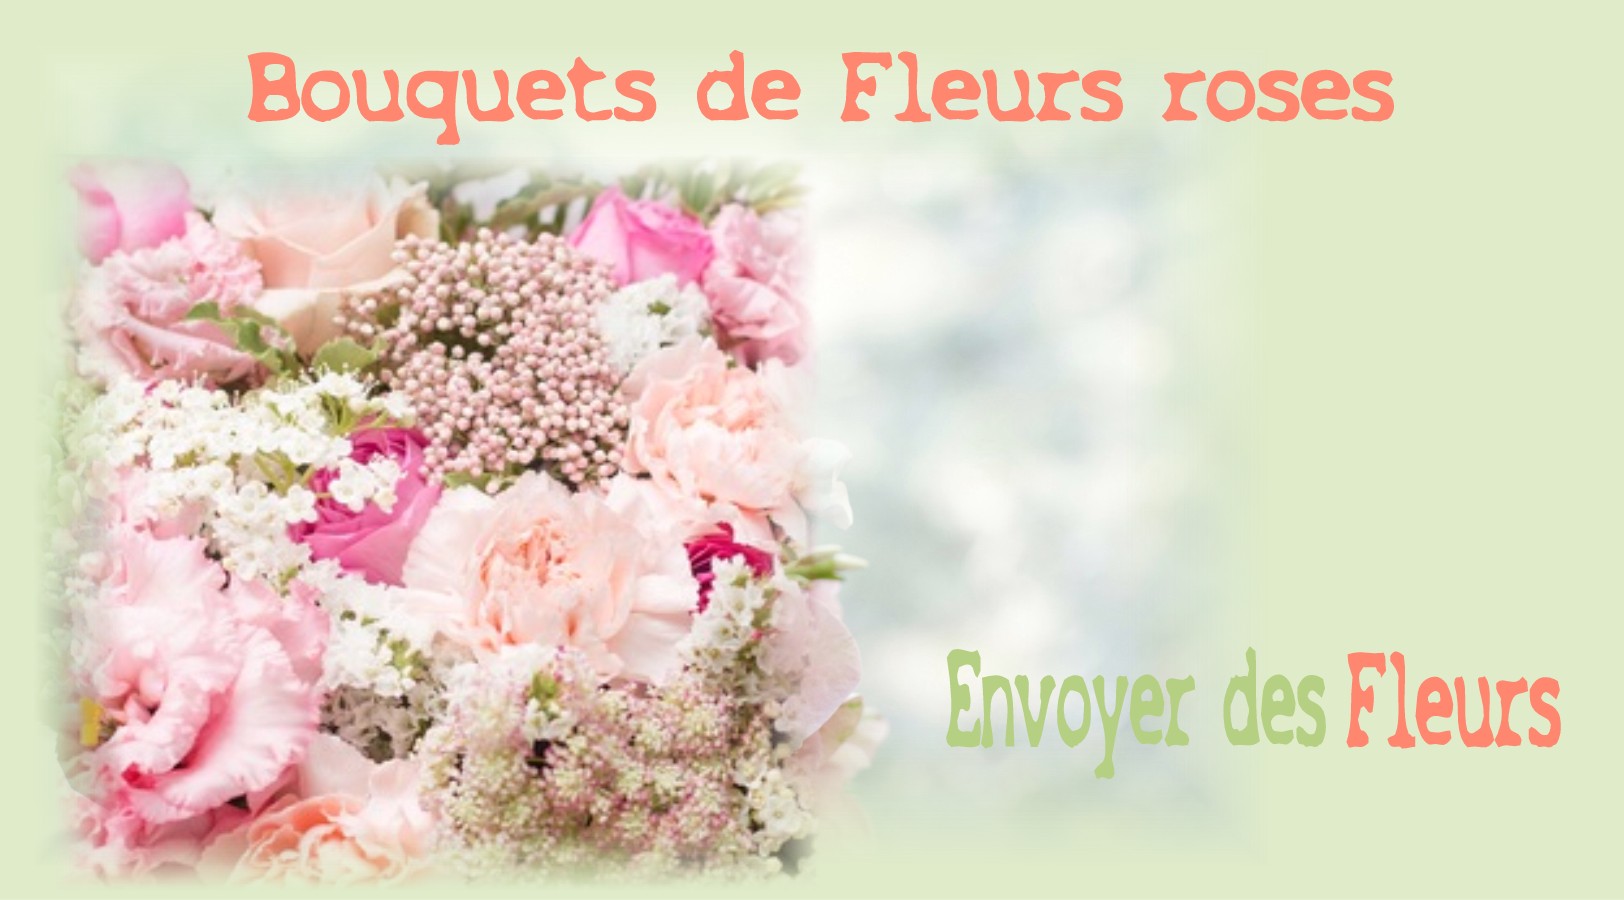 BOUQUETS DE FLEURS ROSES - FLEURISTE NANTES (44) - ENVOYER DES FLEURS